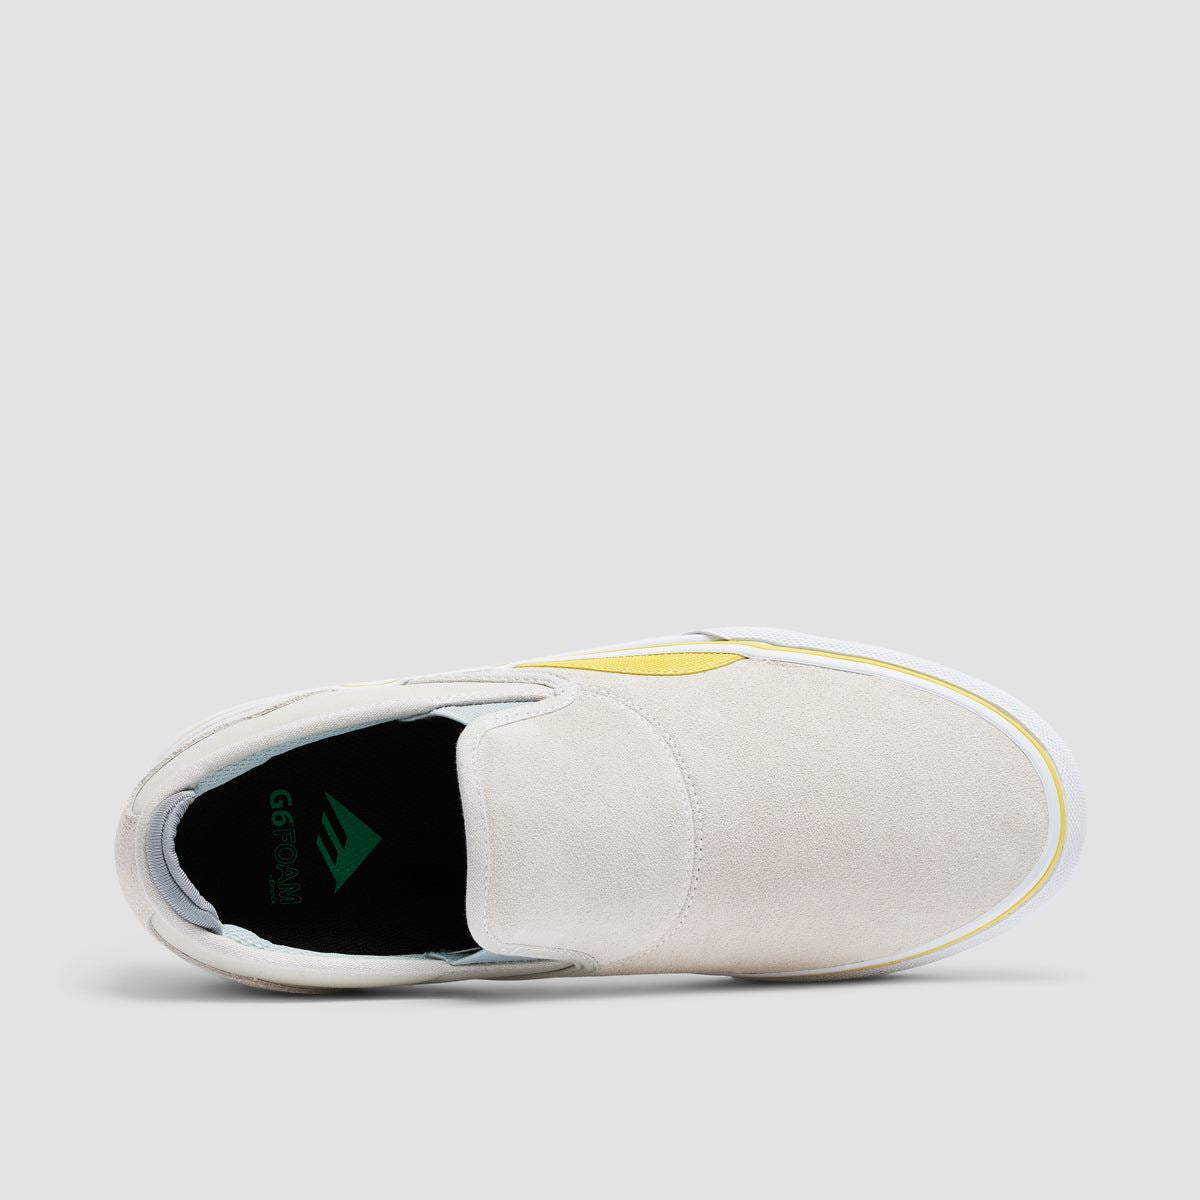 Emerica Wino G6 Slip On Shoes Grey/Yellow